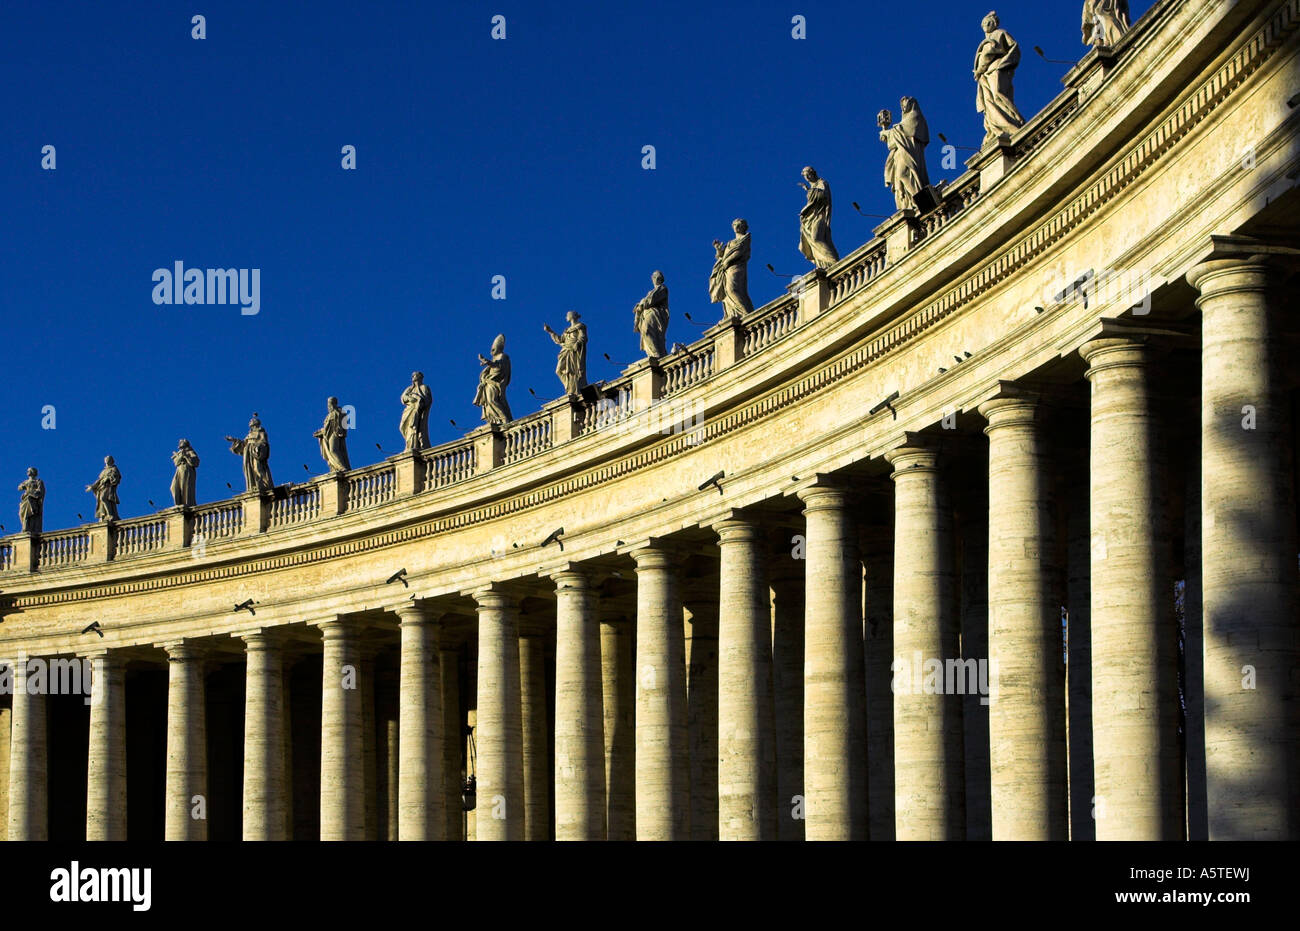 Des statues et des colonnades à Saint Peters Square, Rome. Piazza San Pietro. Banque D'Images